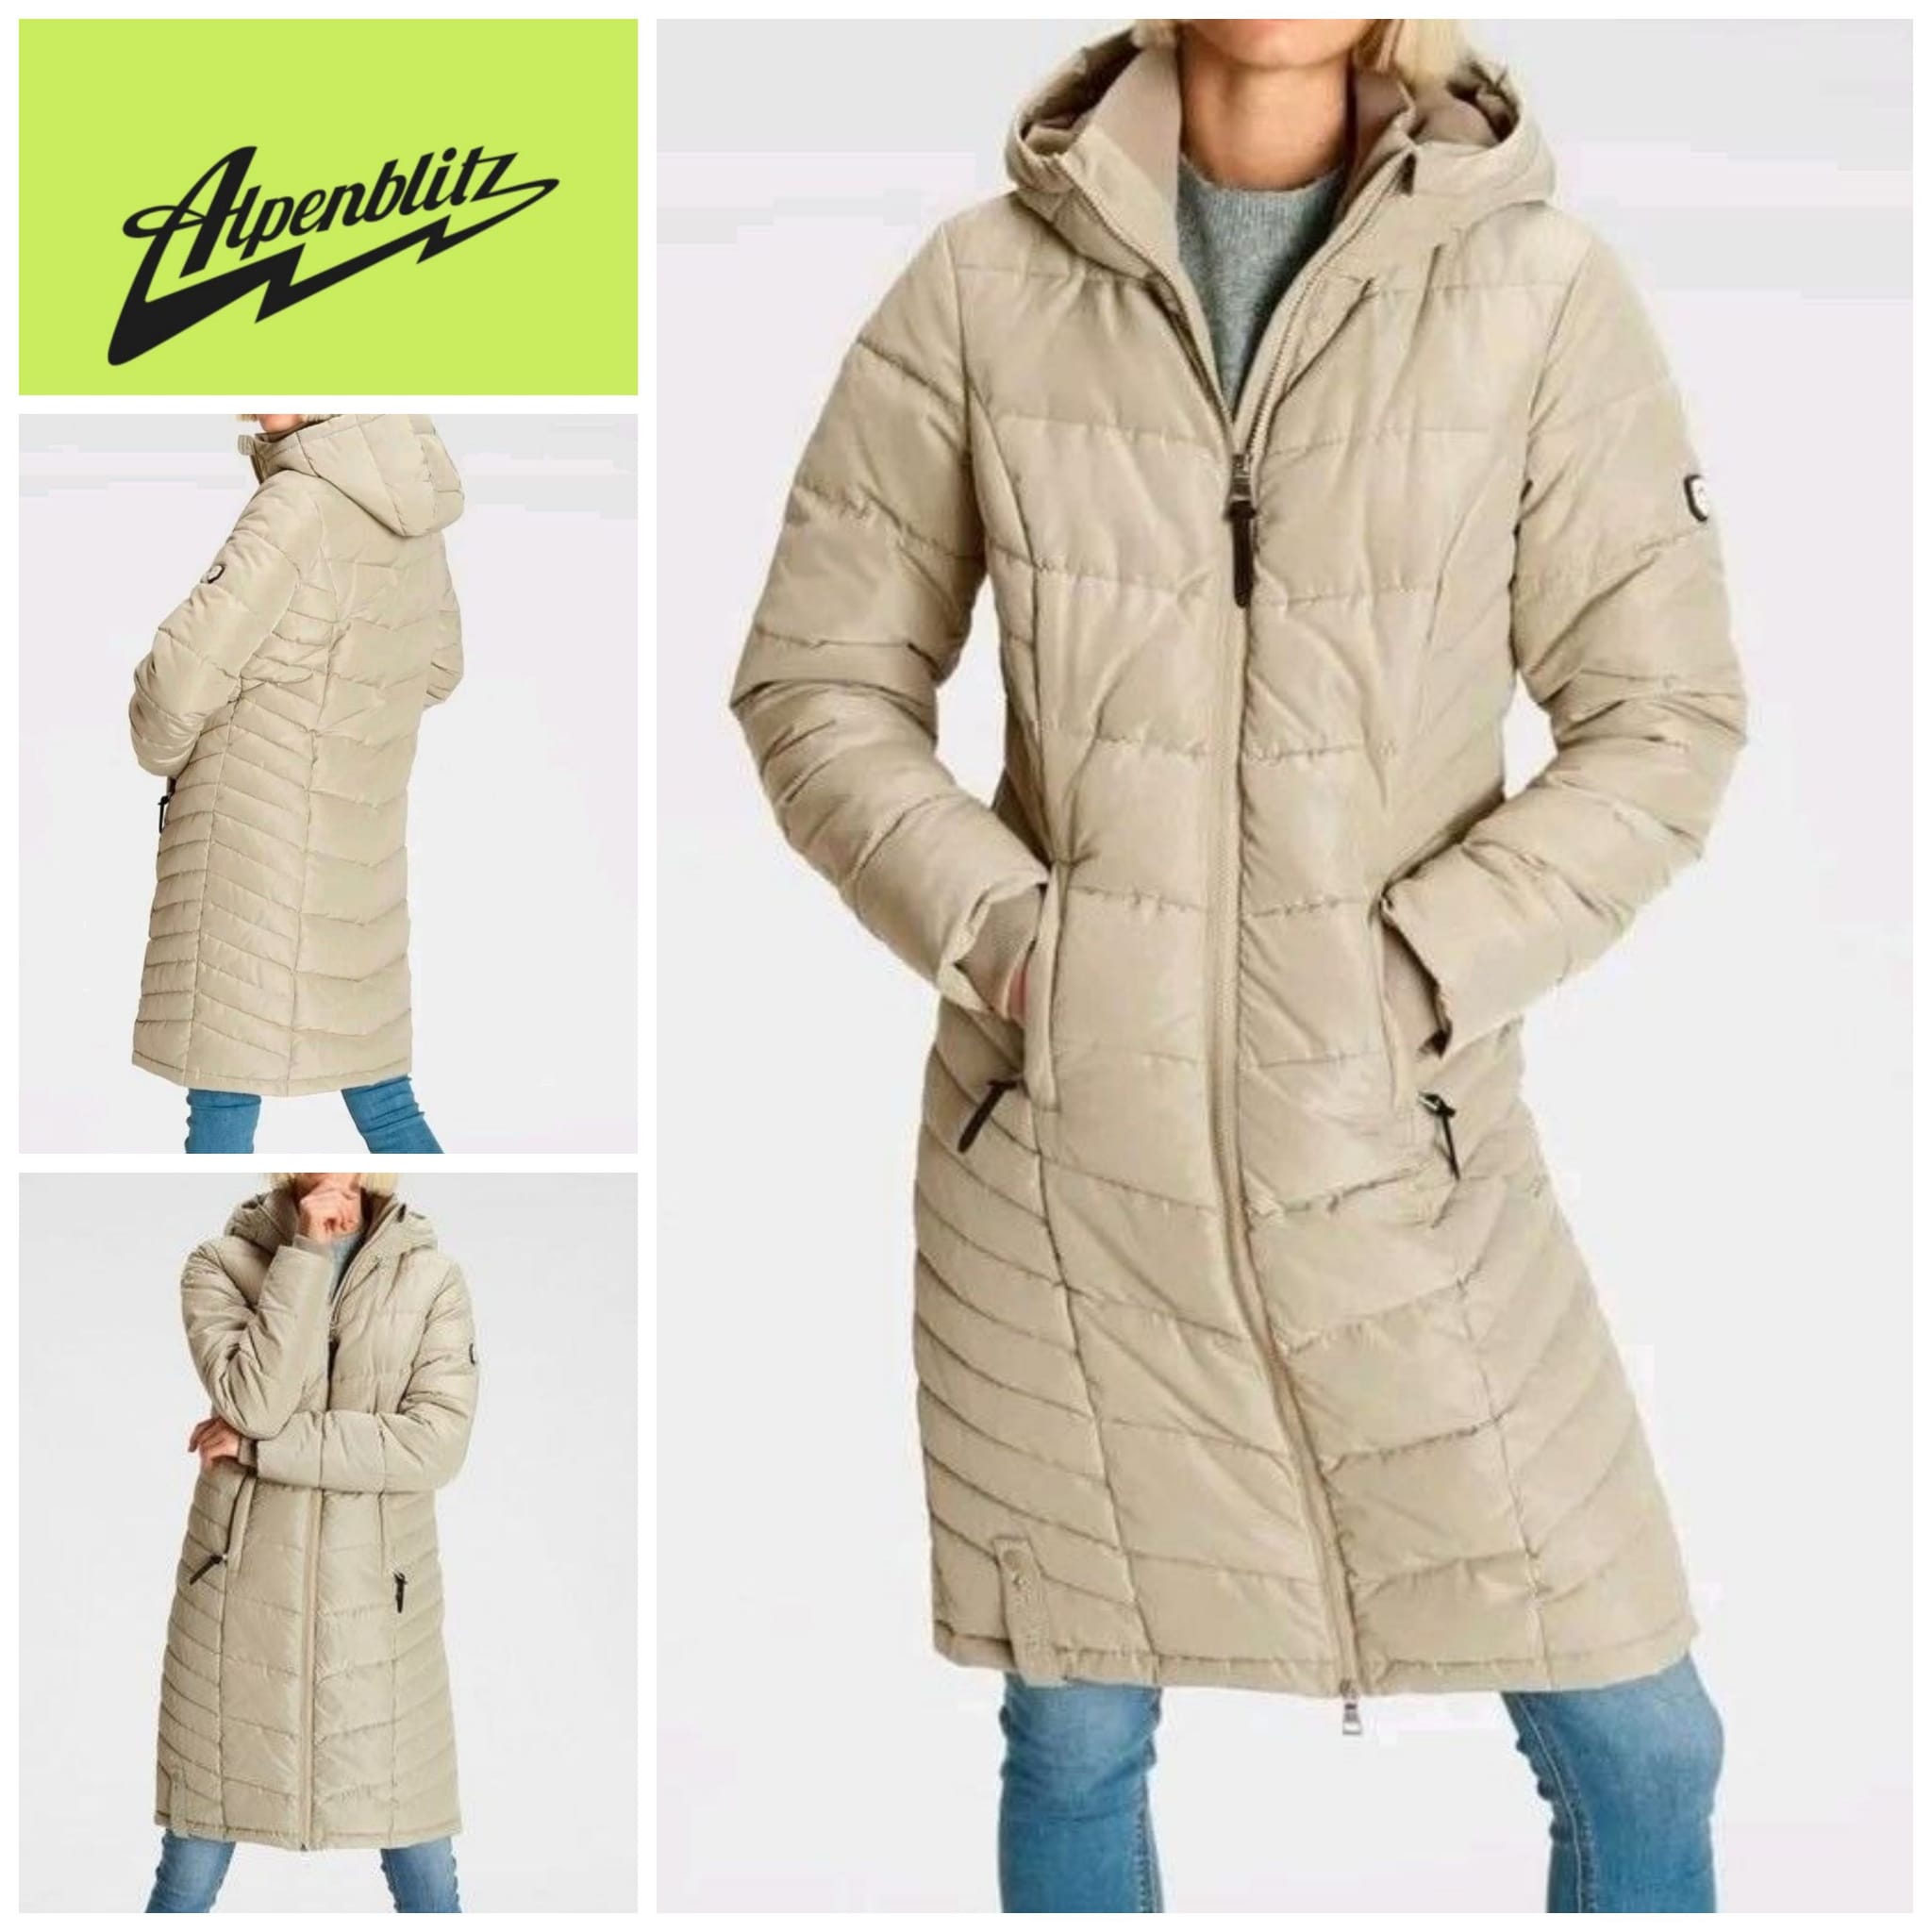 Manteau d'hiver femme Alpenblitz